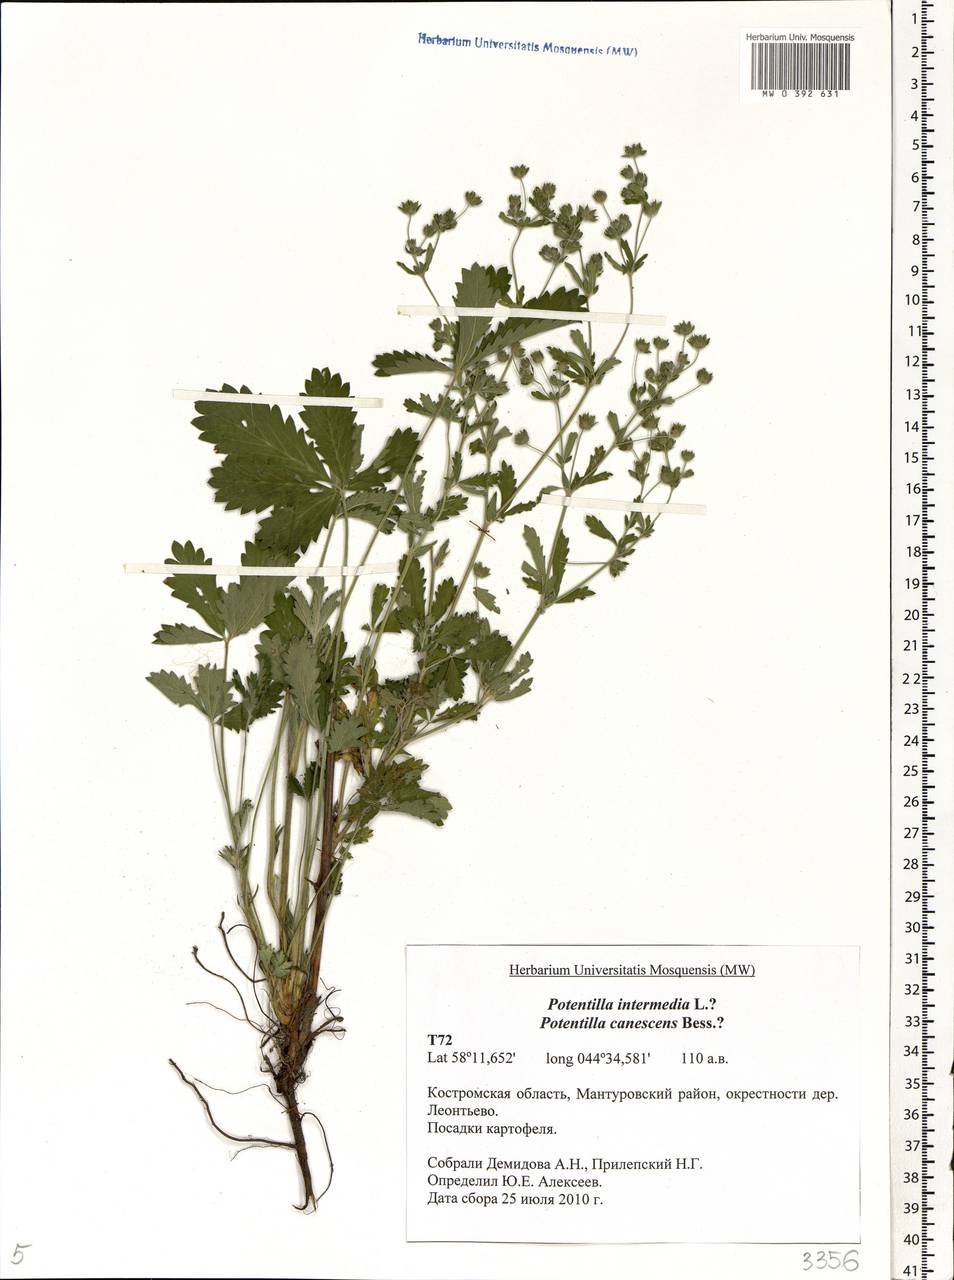 Potentilla intermedia L., Eastern Europe, Central forest region (E5) (Russia)